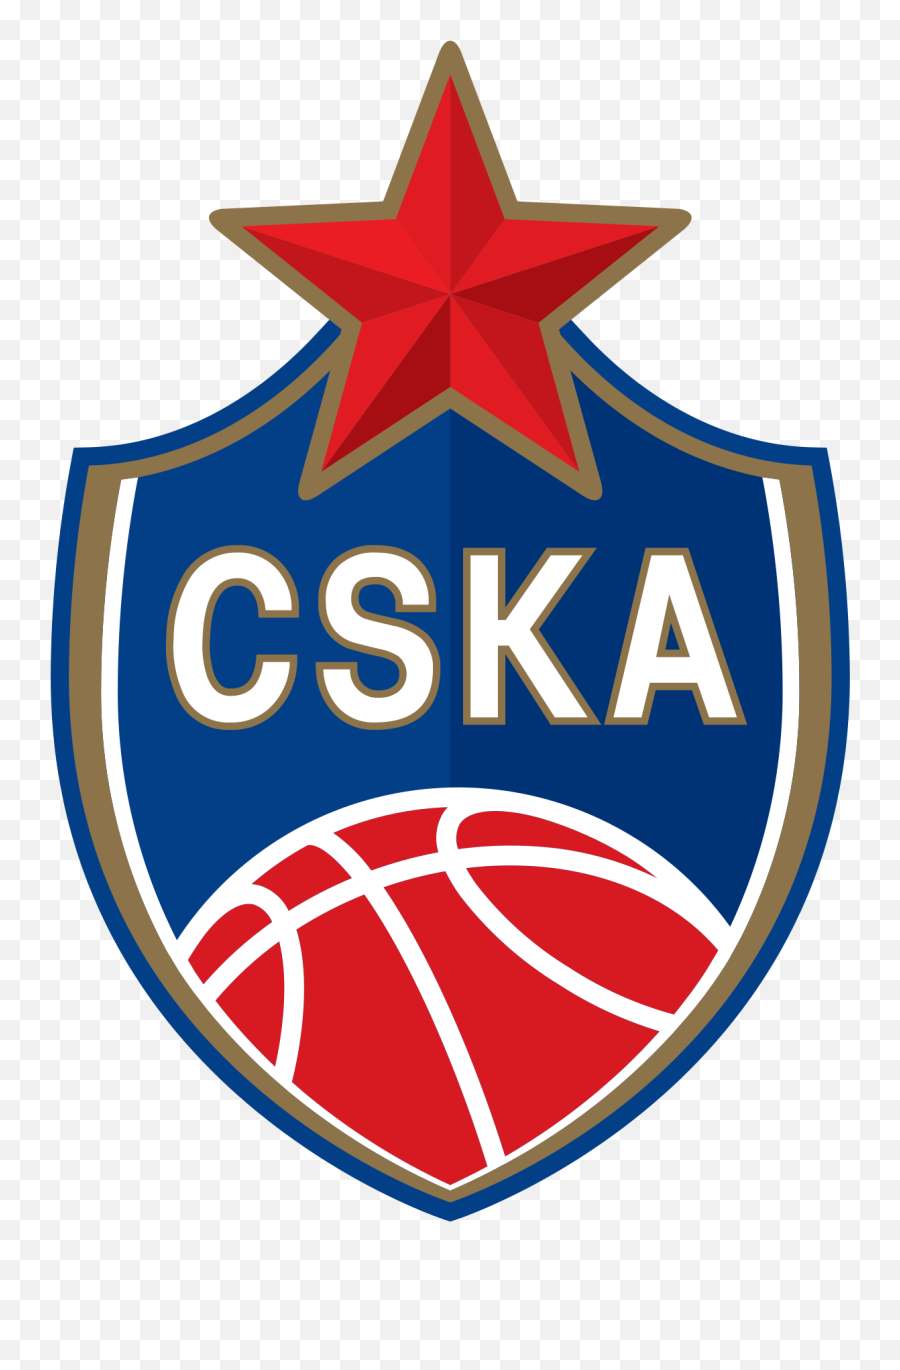 Pbc Cska Moscow - Wikipedia Cska Moscow Basketball Logo Png,Basketball Logo